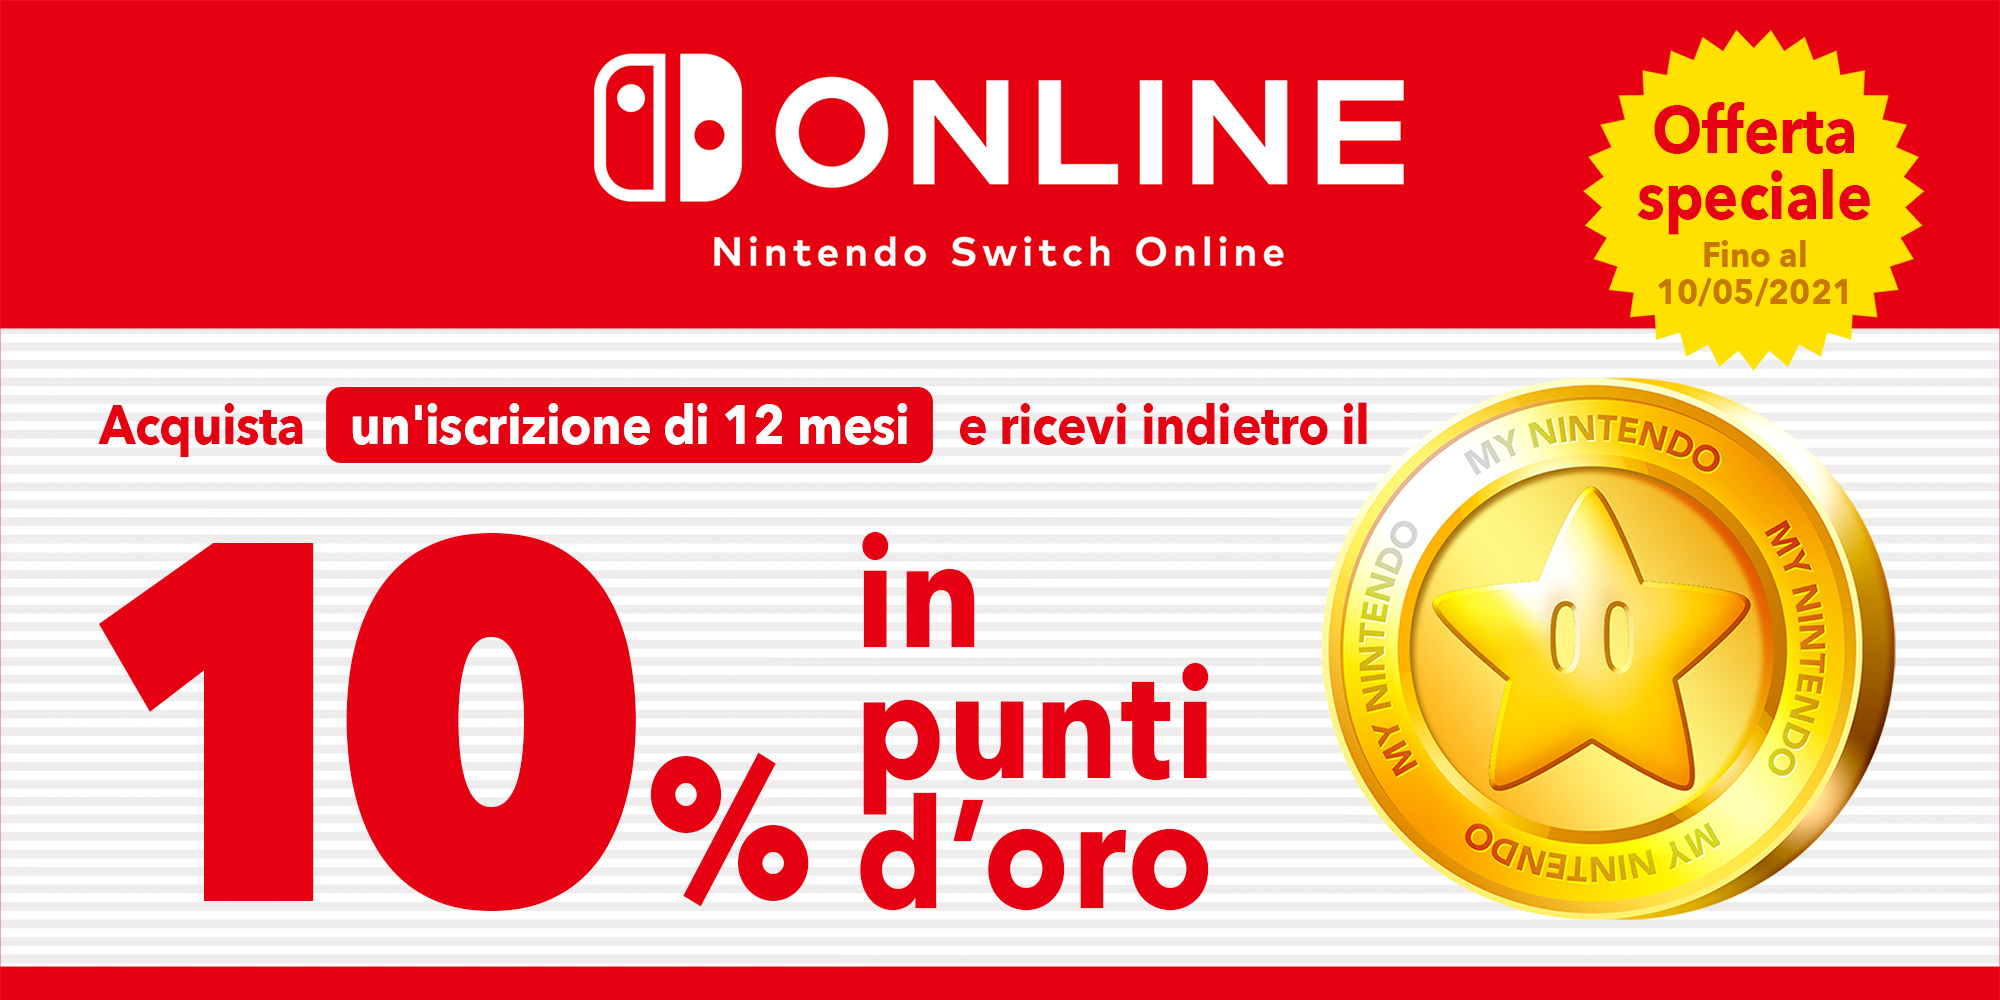 Offerta speciale: ottieni fino a 3,50 € in punti d'oro con un'iscrizione di 12 mesi a Nintendo Switch Online!